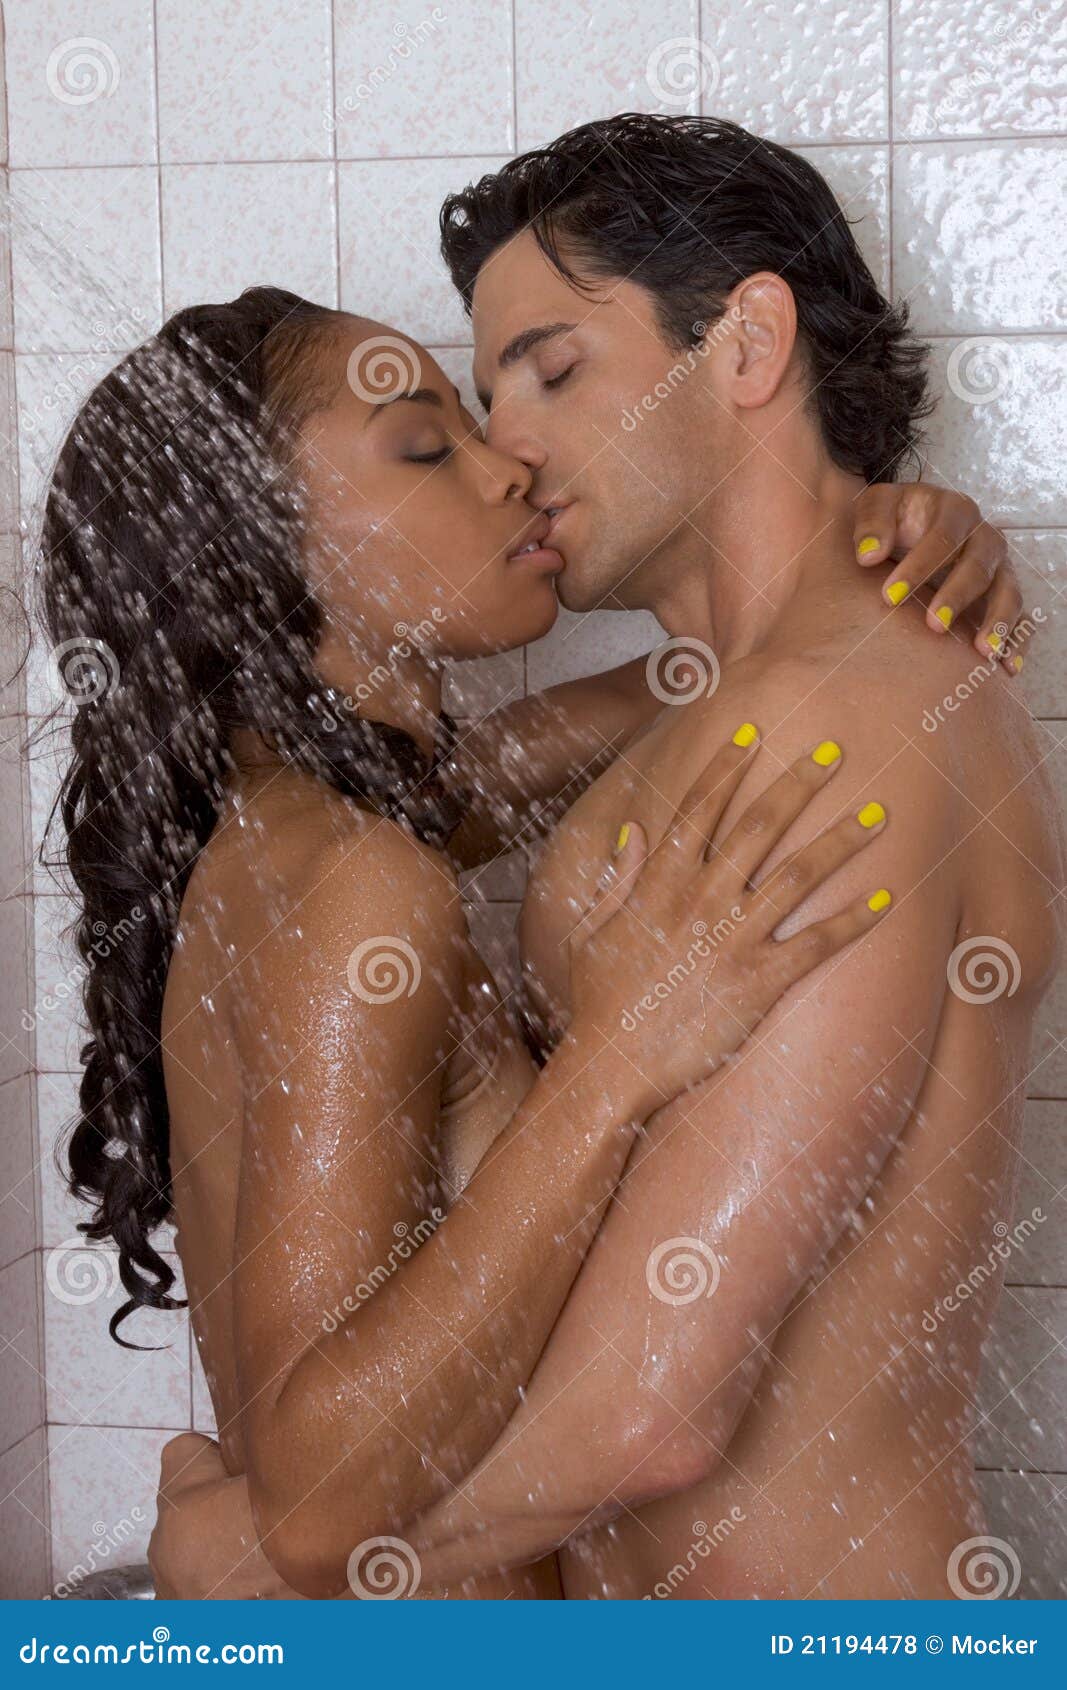 Naked Women In Shower 34